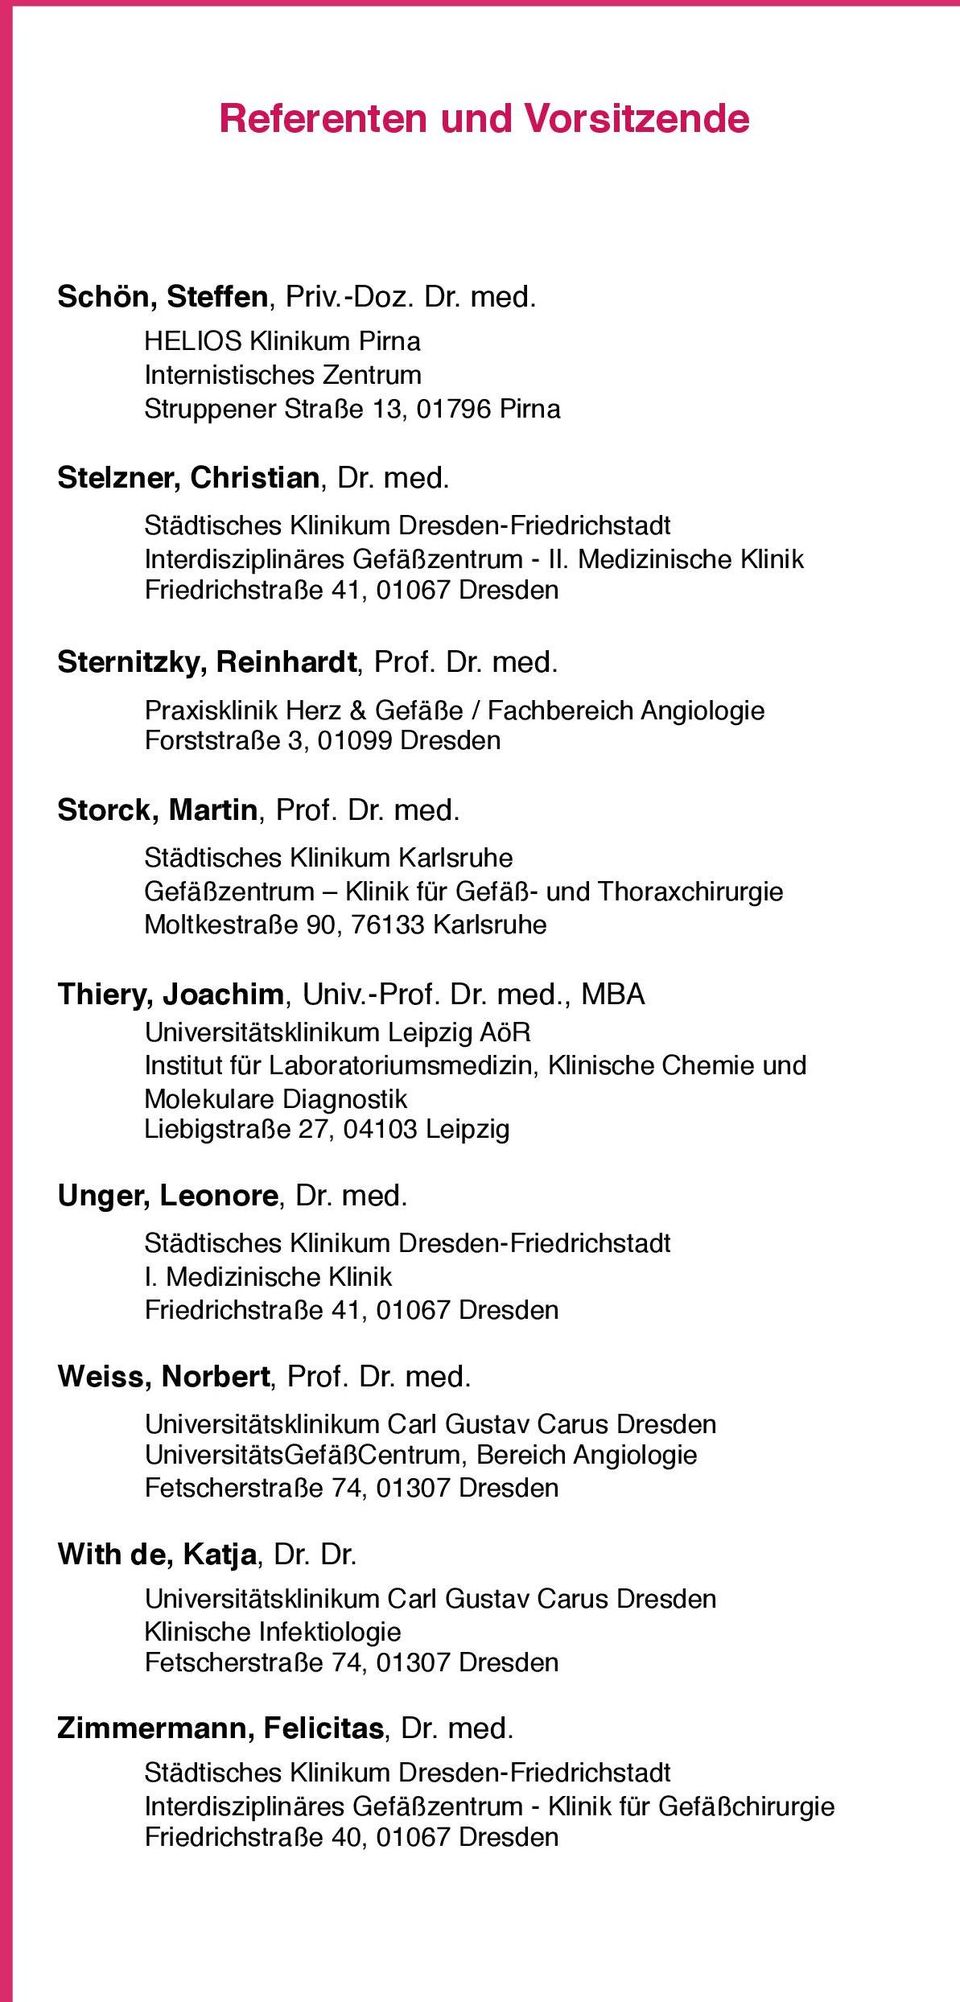 Praxisklinik Herz & Gefäße / Fachbereich Angiologie Forststraße 3, 01099 Dresden Storck, Martin, Prof. Dr. med.